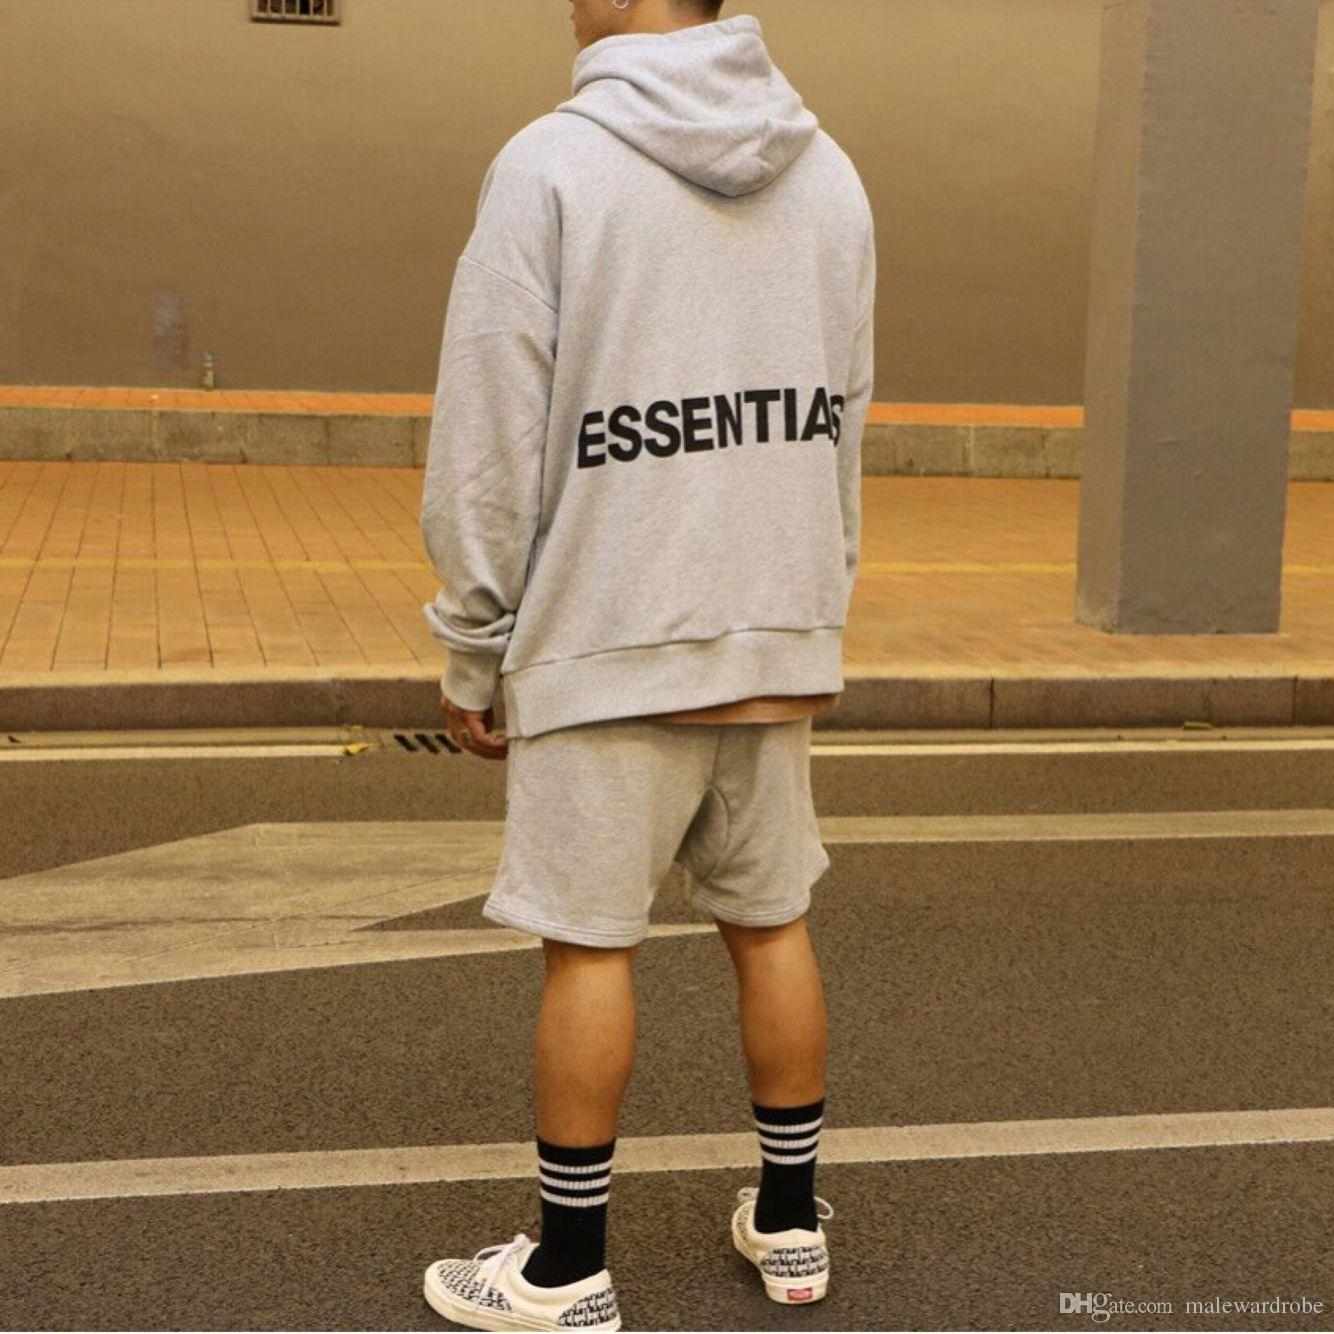 Pria menggunakan hoodie bertulisan essentials dengan short pants dan sneakers